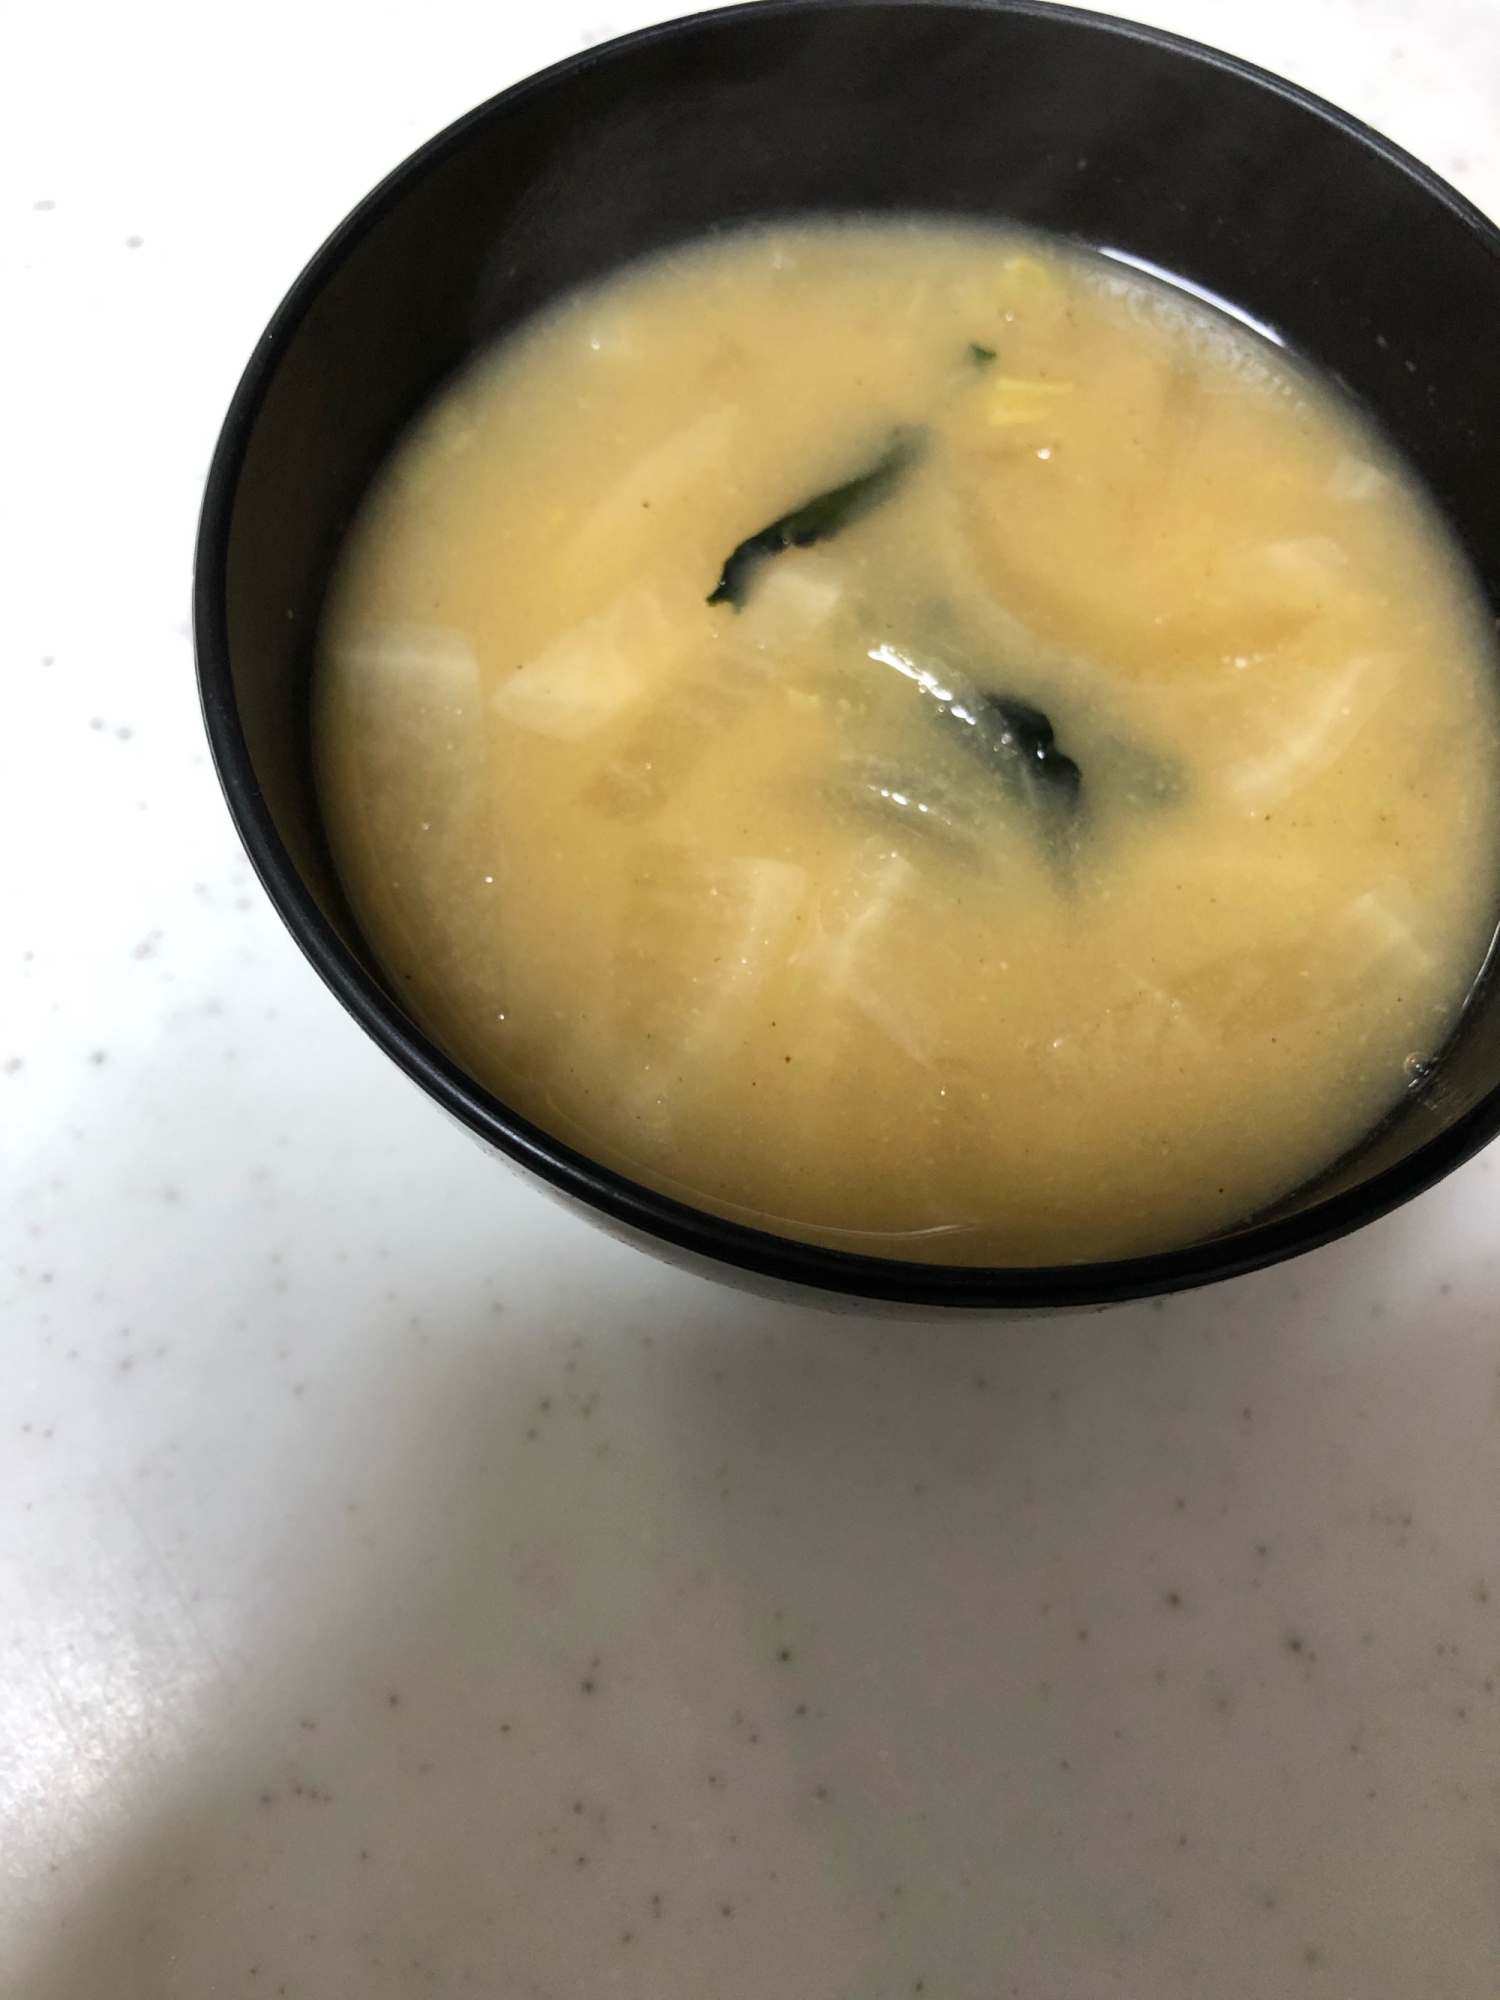 新玉葱と白菜と大根とわかめのお味噌汁(^^)